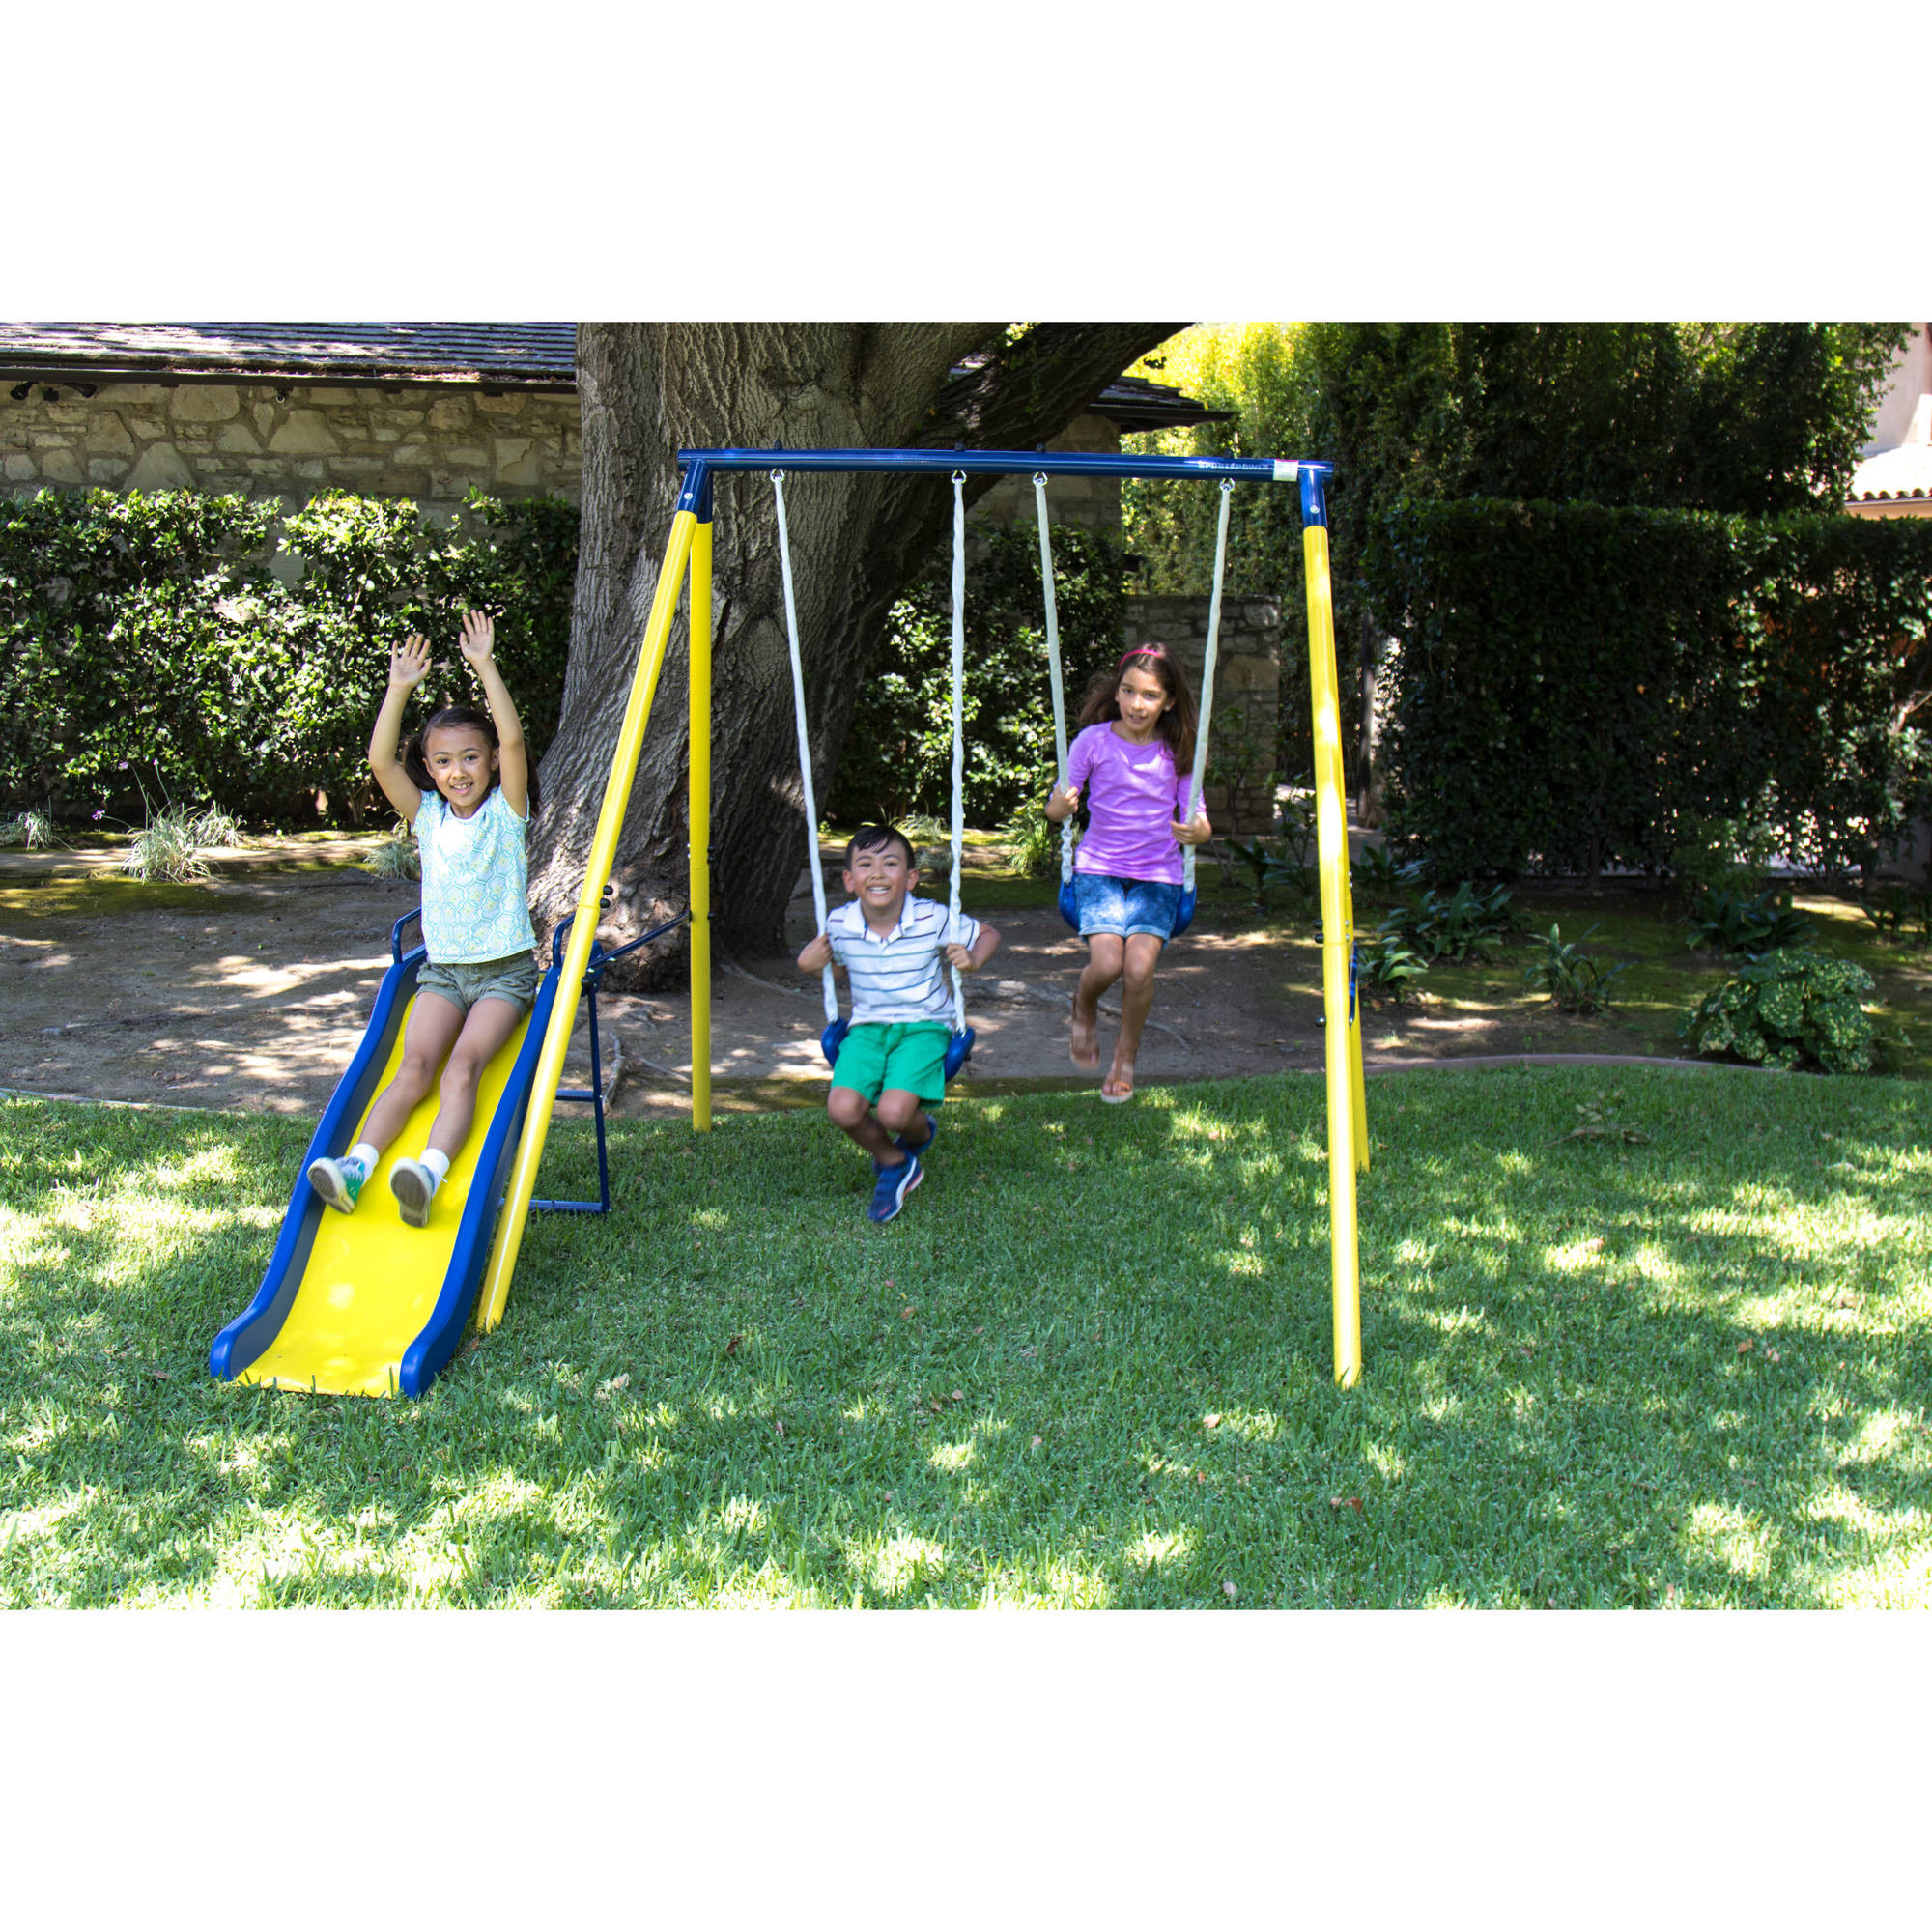 Kids Backyard Swing Sets
 Sportspower Power Play Time Metal Swing Set Outdoor Kids